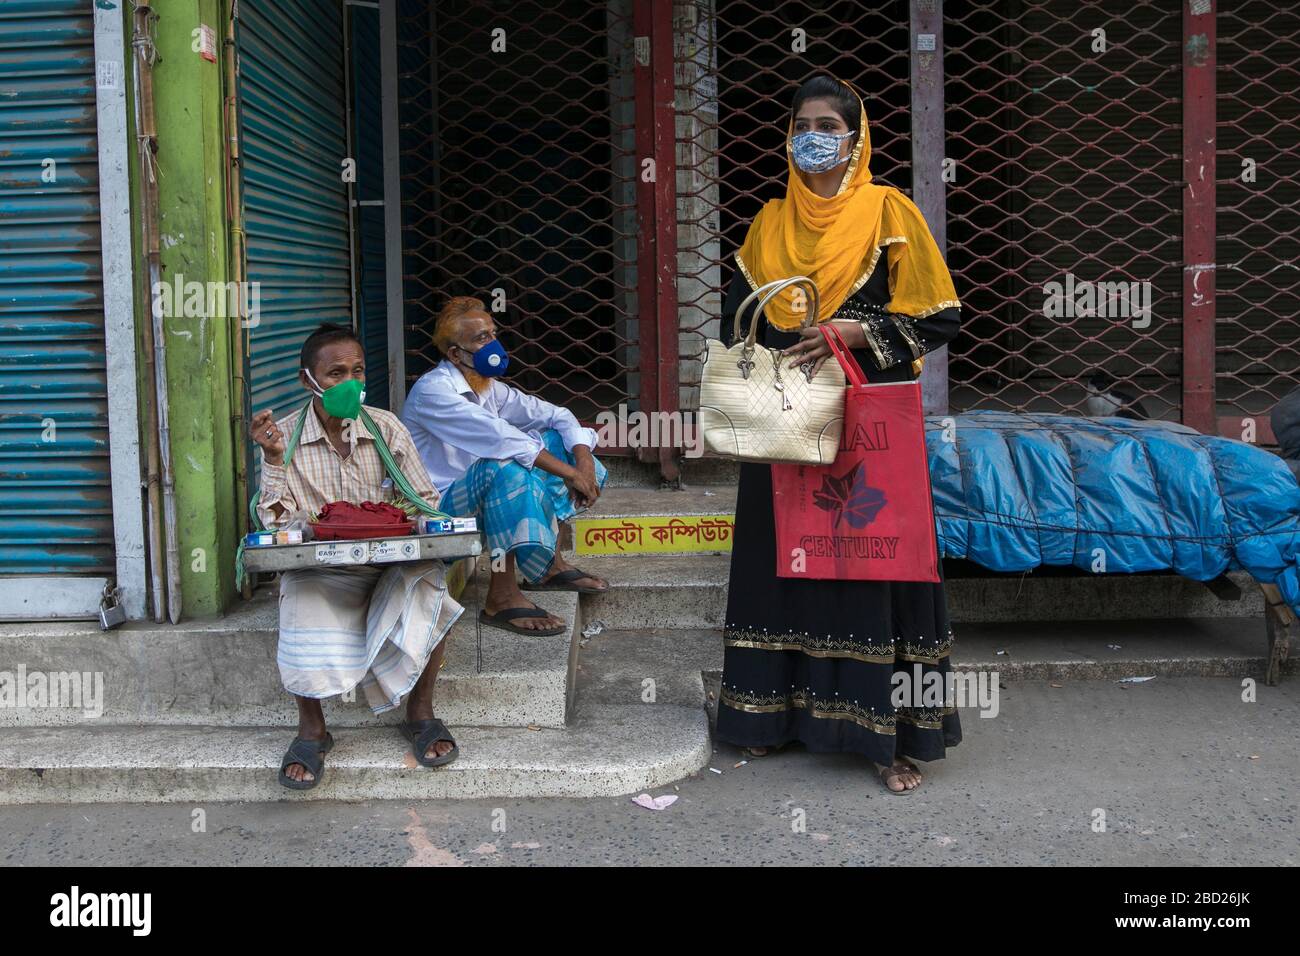 DHAKA, BANGLADESH - APRILE 06: La popolazione del Bangladesh ha visto per strada durante la chiusura a chiave imposta dal governo come misura preventiva contro il coronav COVID-19 Foto Stock